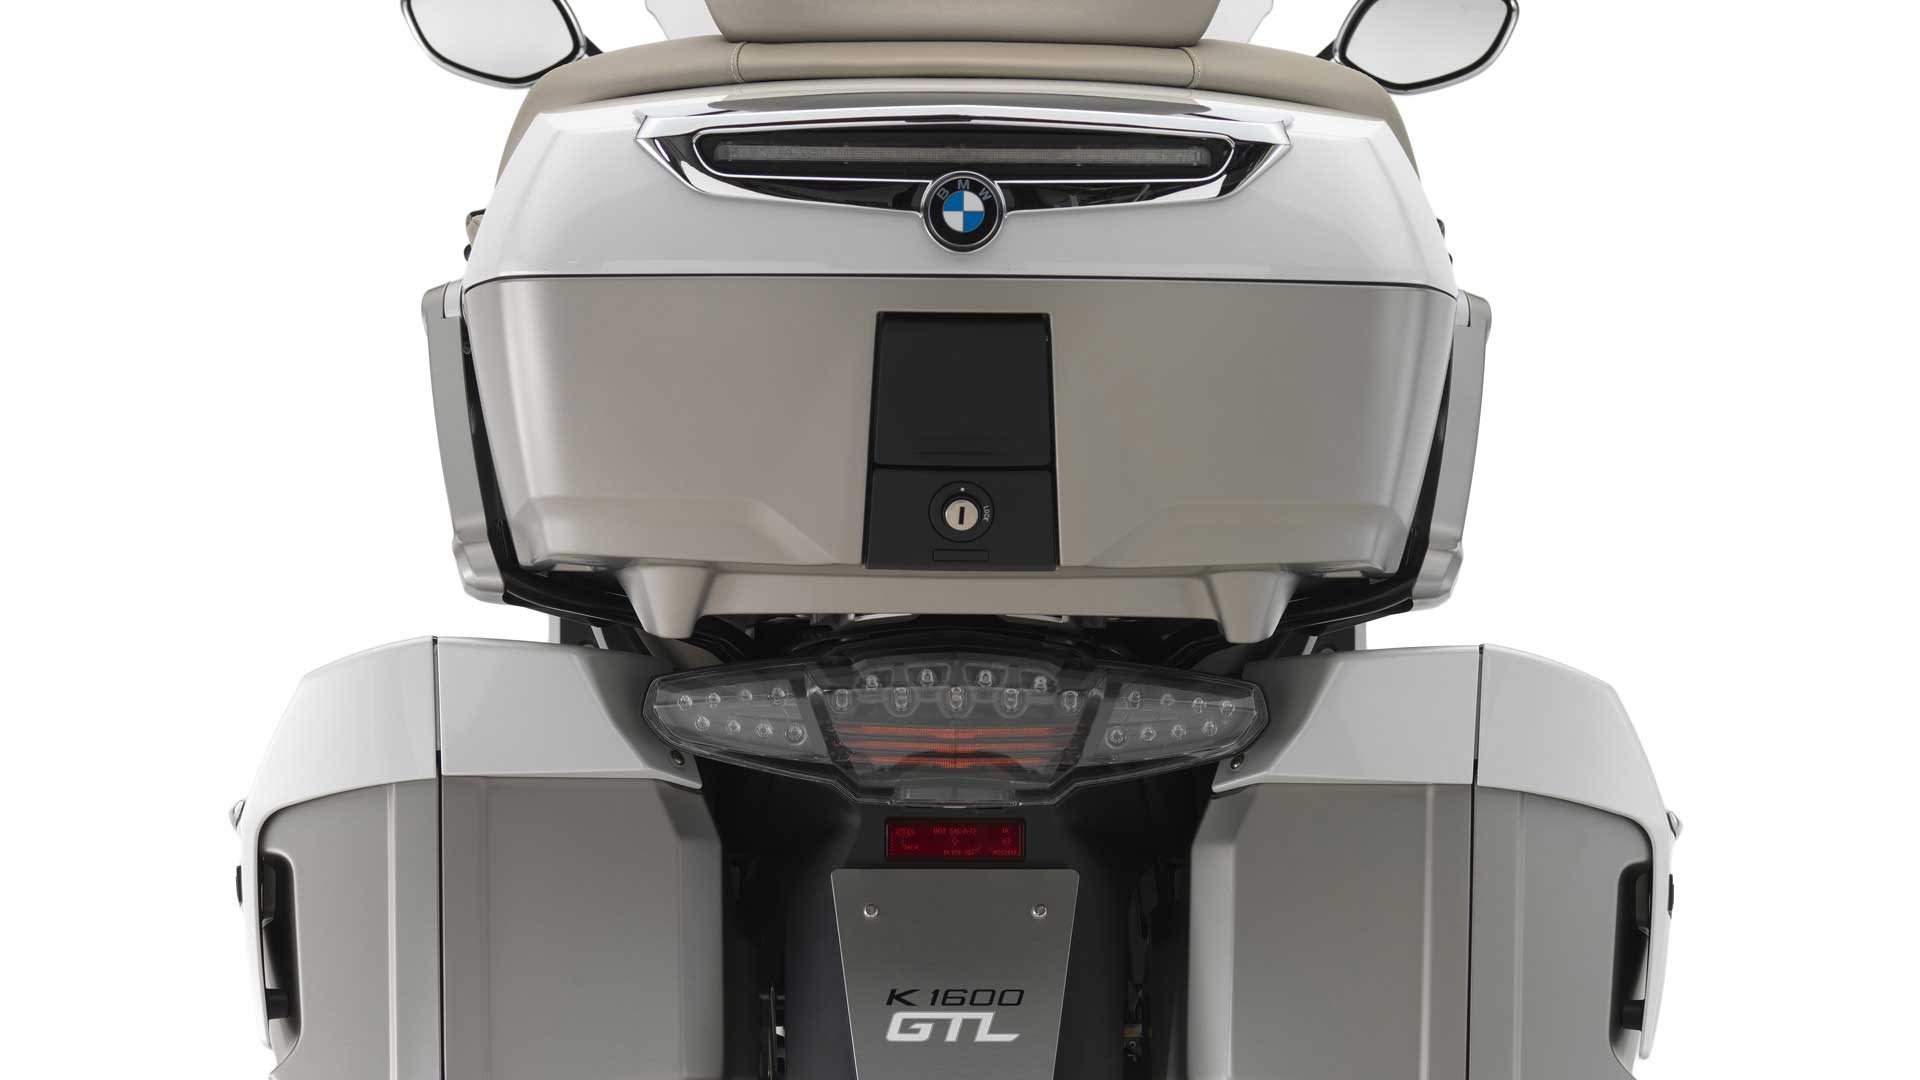 2014 BMW K 1600 GTL Exclusive rear view